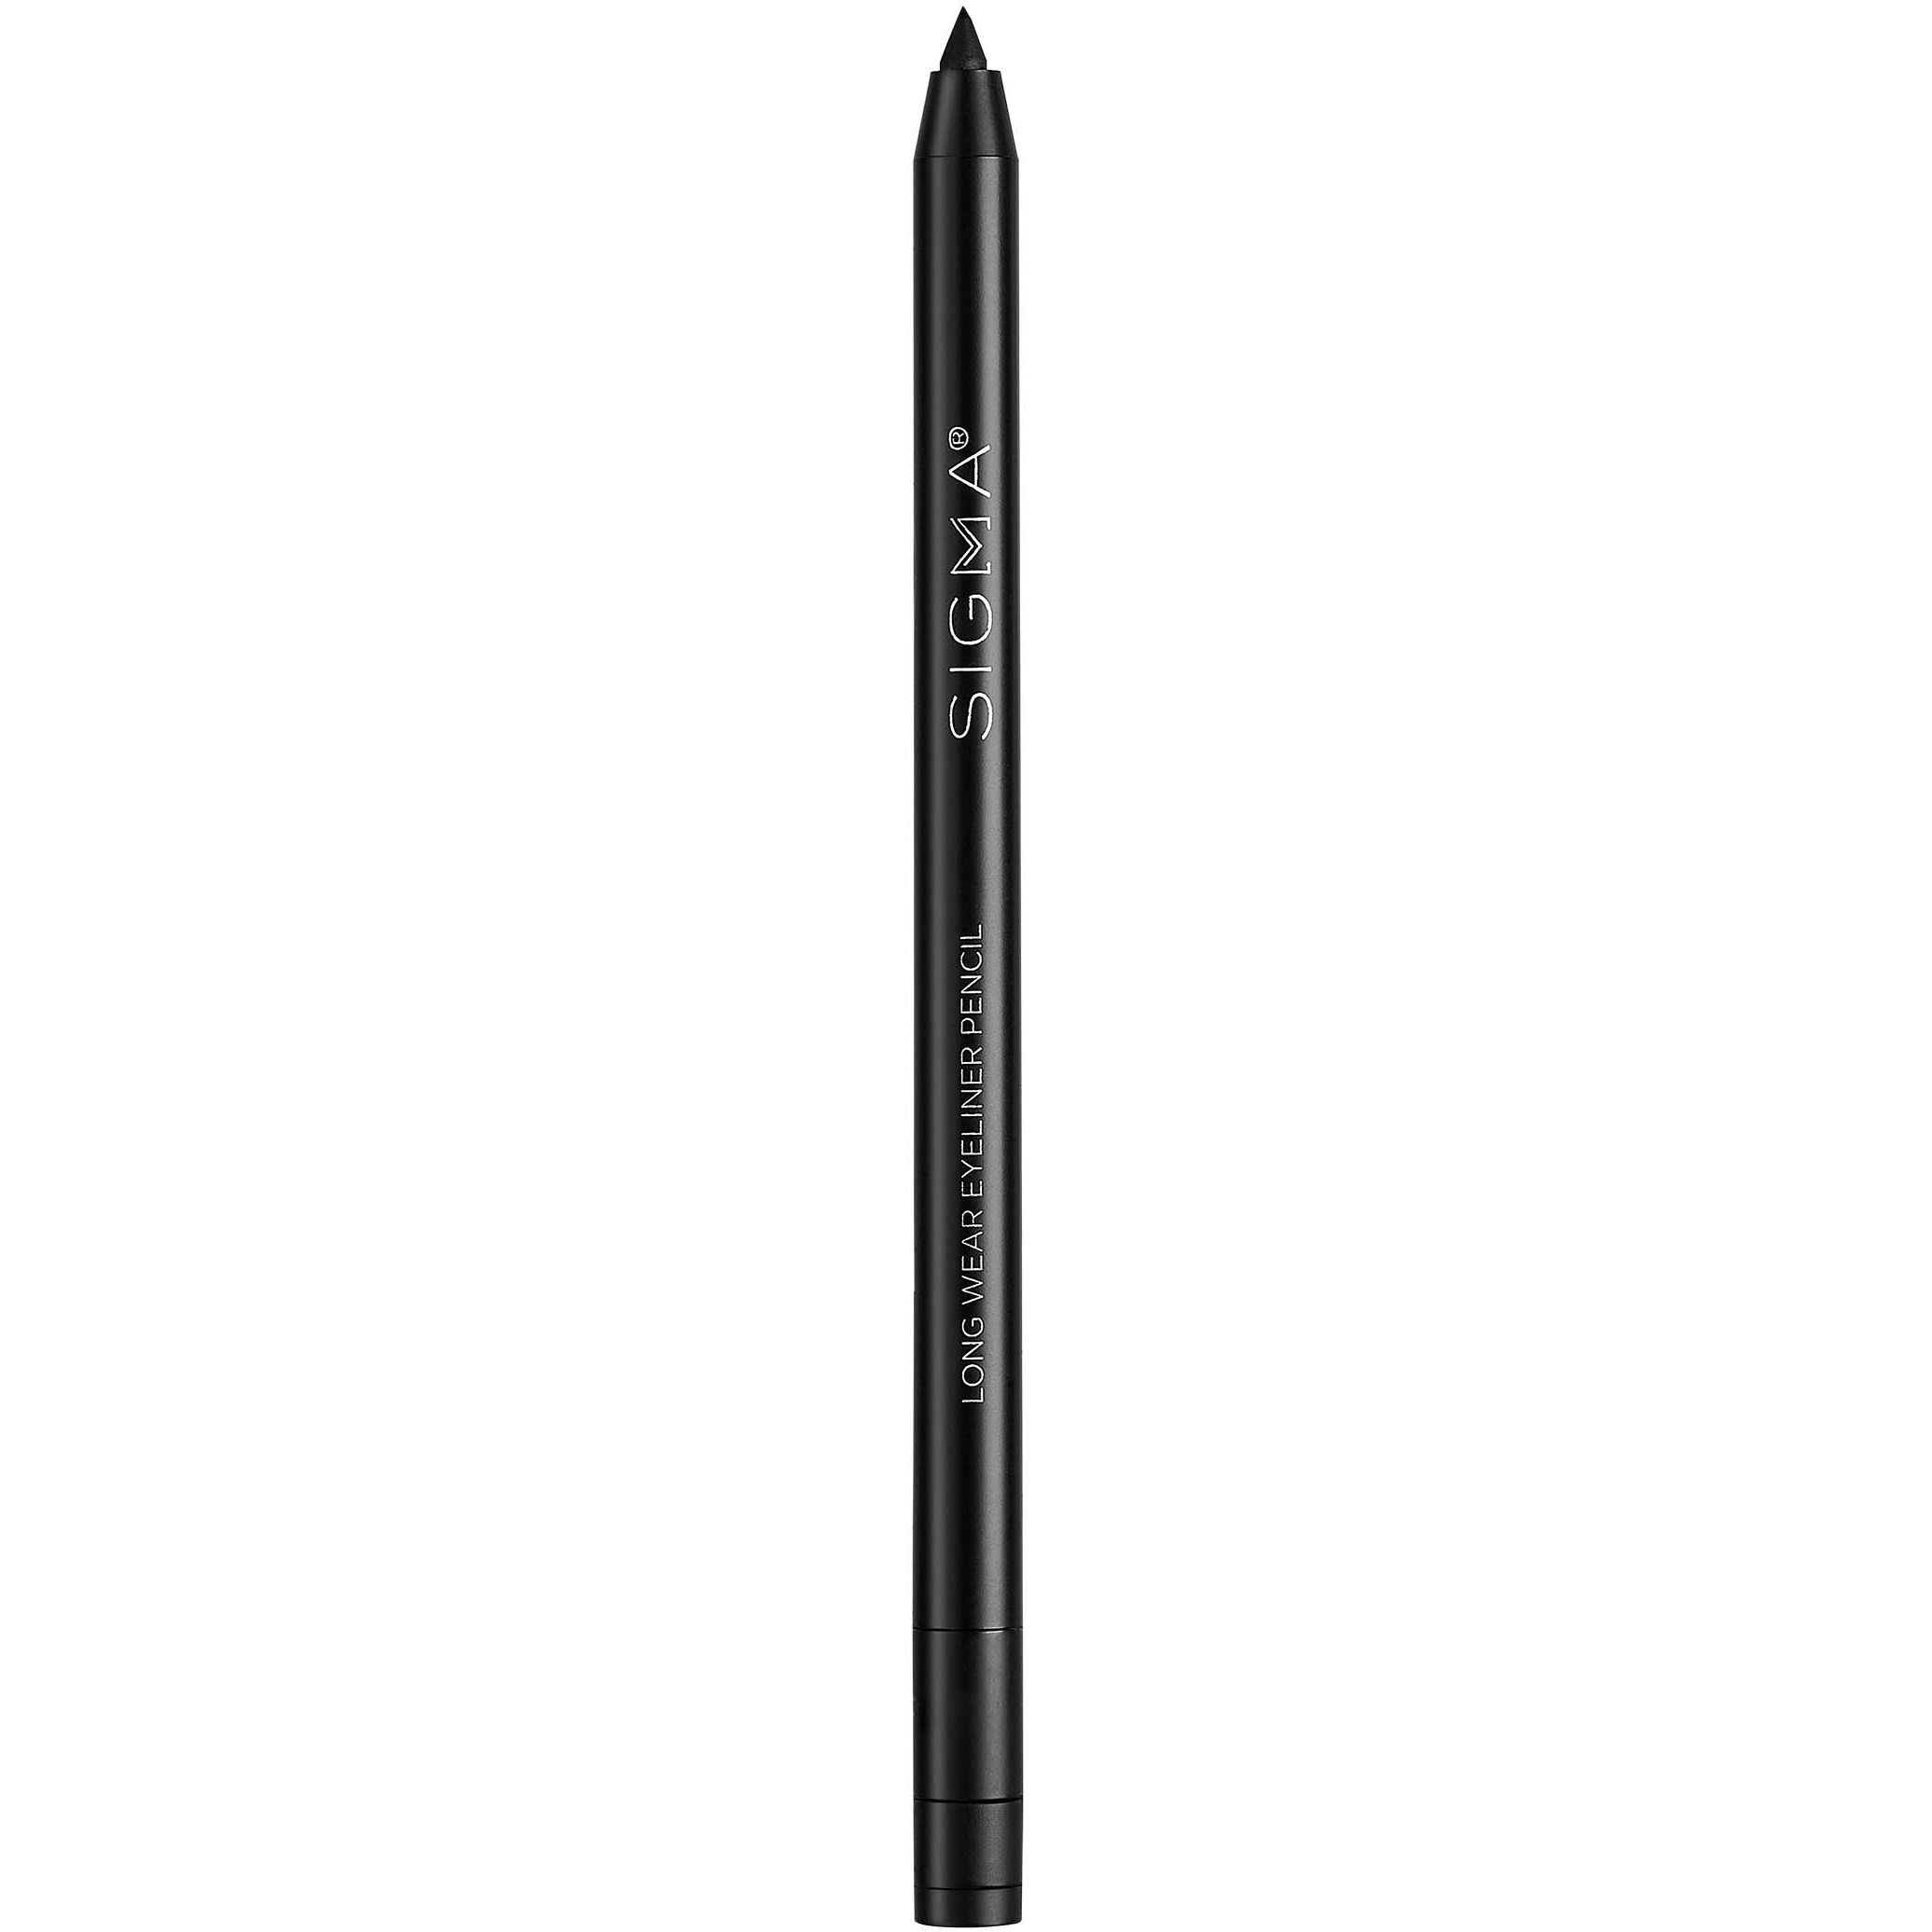 Bilde av Sigma Beauty Long Wear Eyeliner Pencil- Wicked